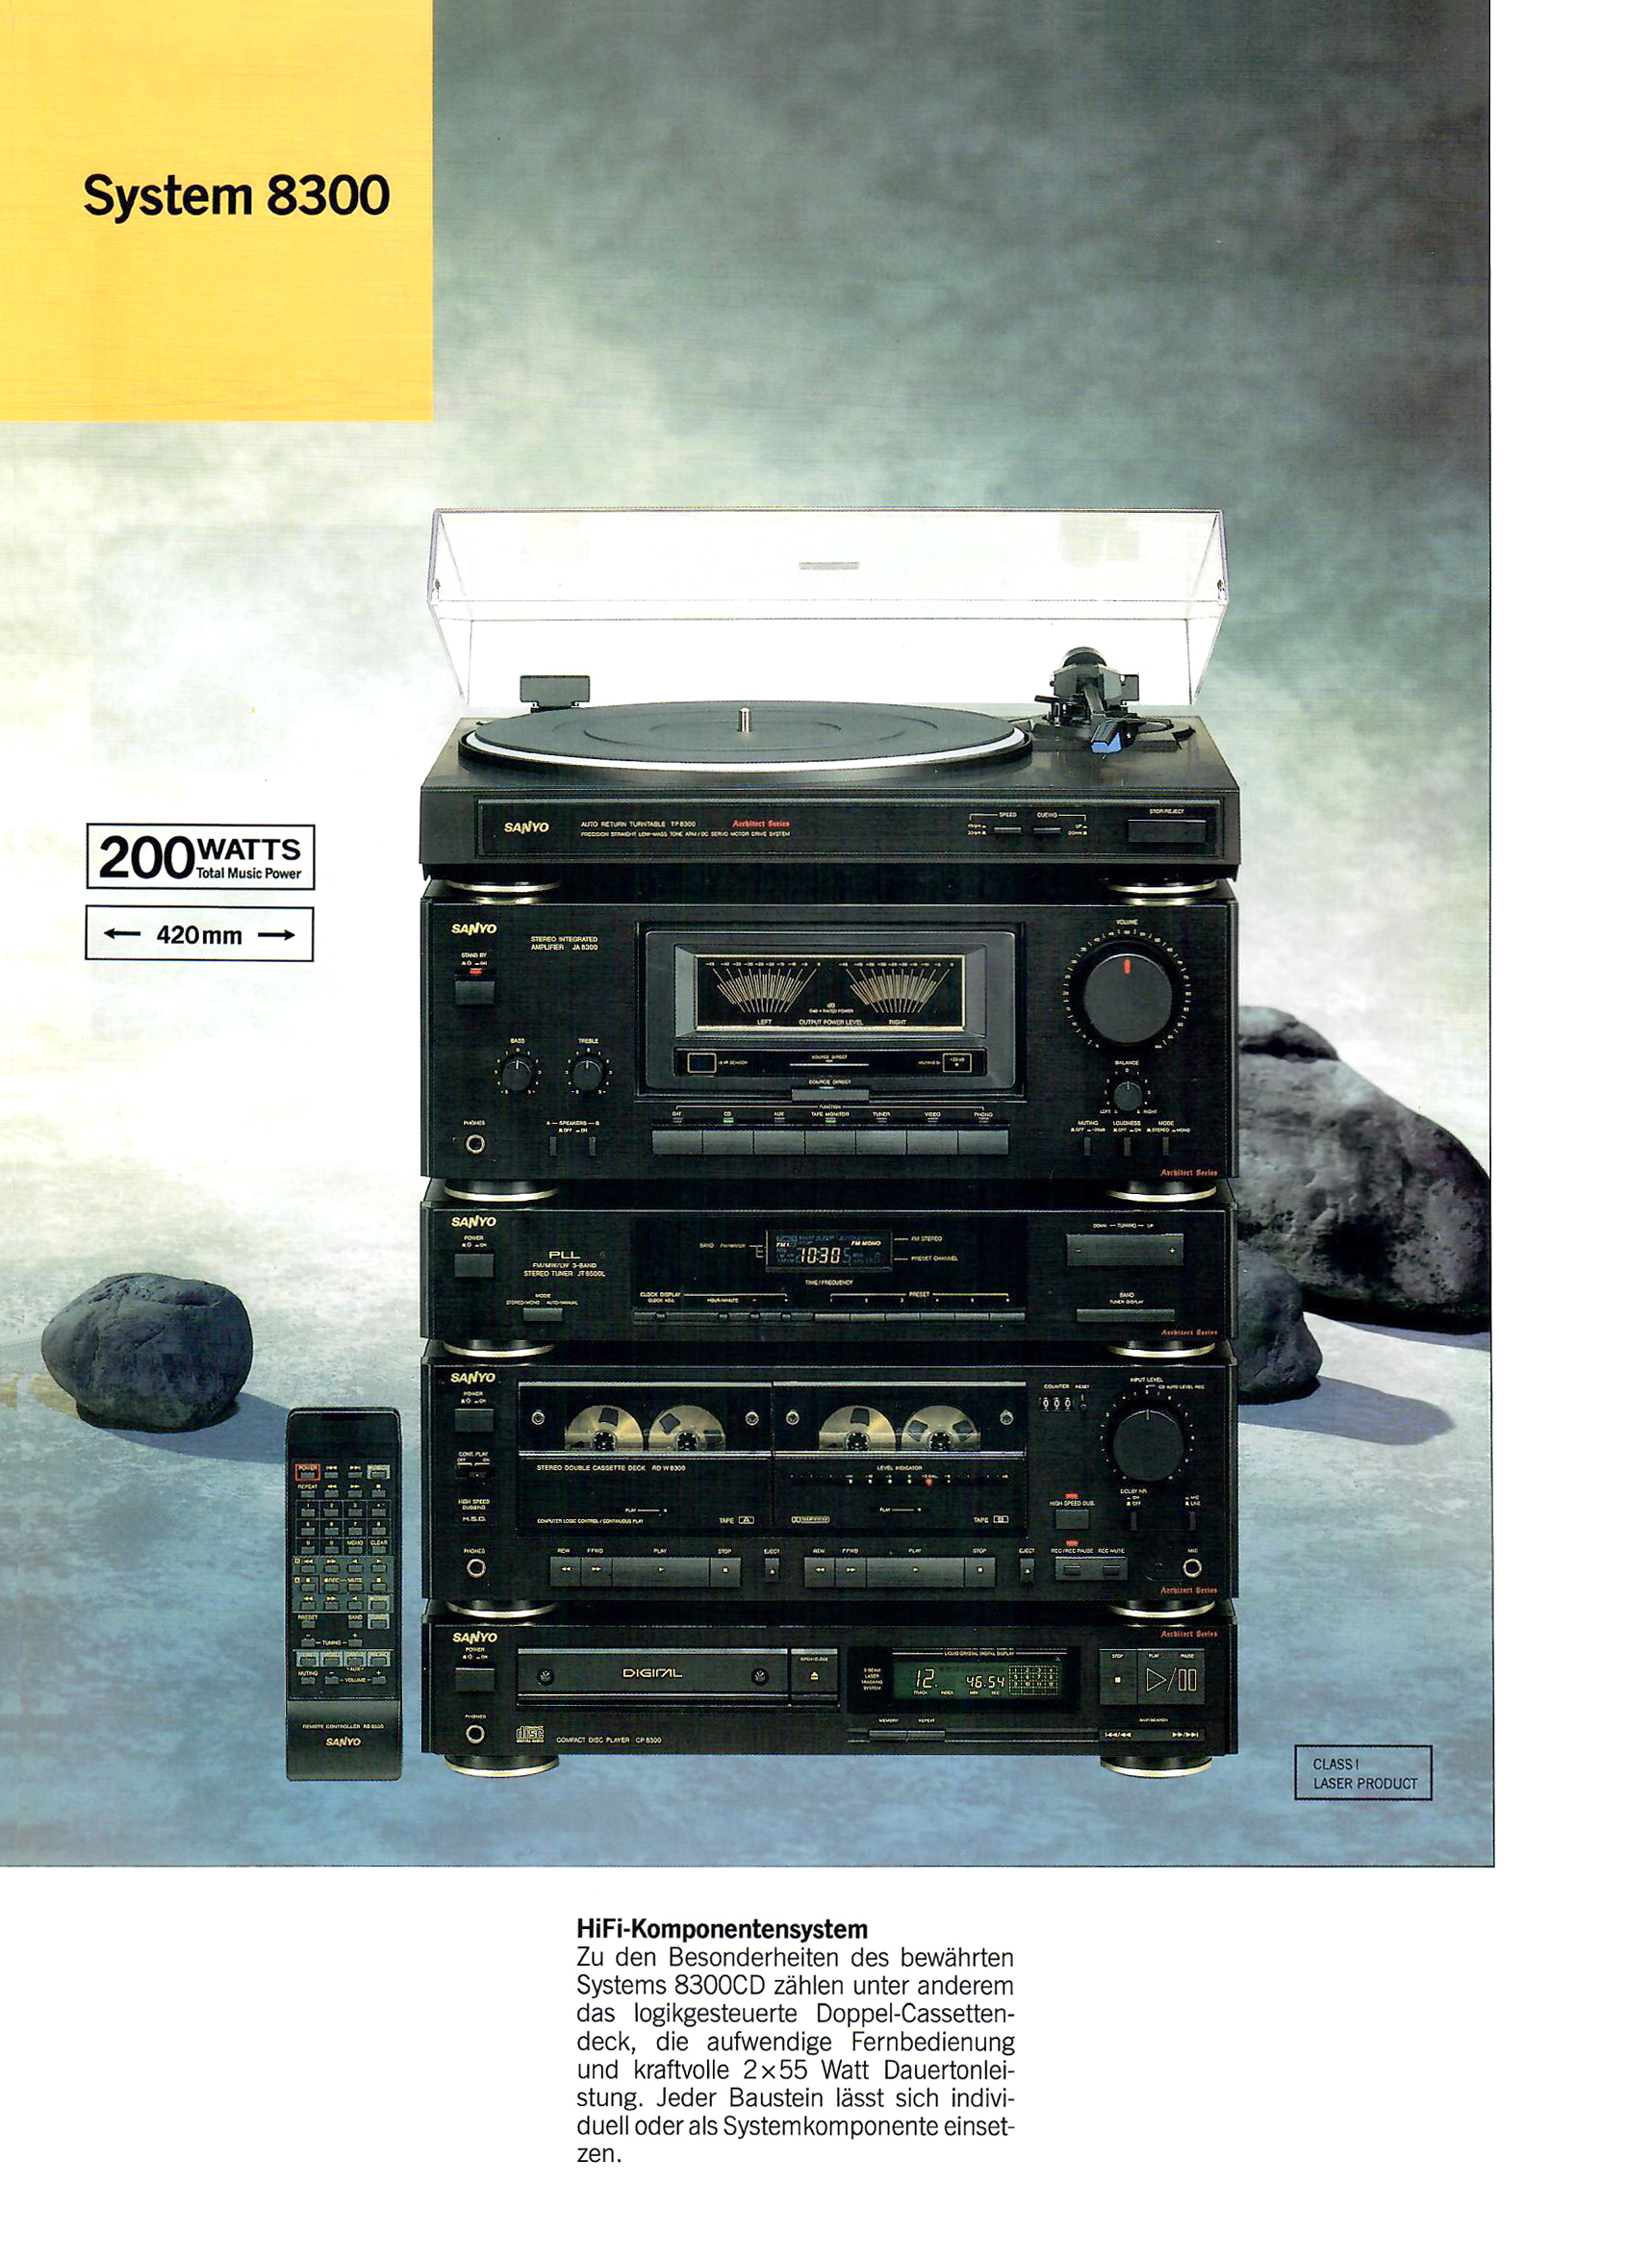 Sanyo System 8300-Prospekt-1989.jpg